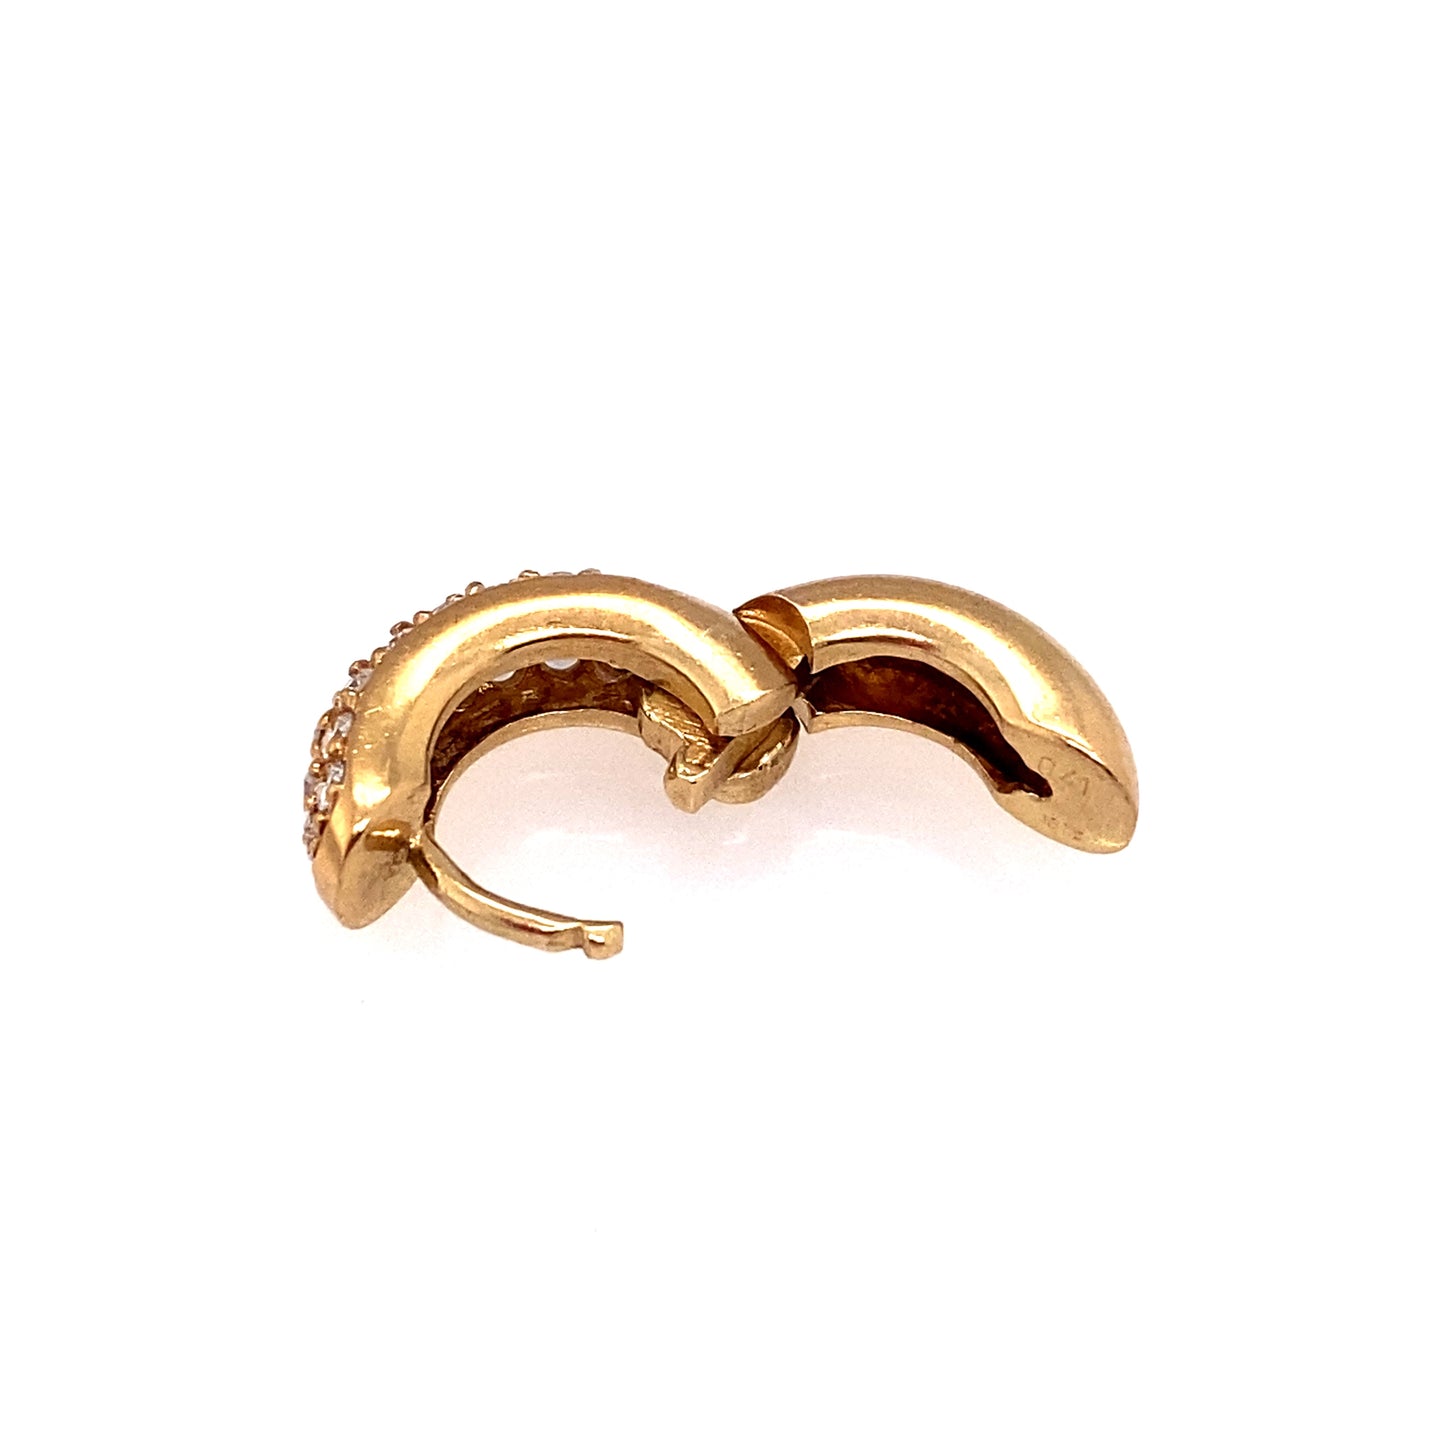 Circa 1980s Pavé Diamond Huggie Hoop Earrings in 18 Karat Gold